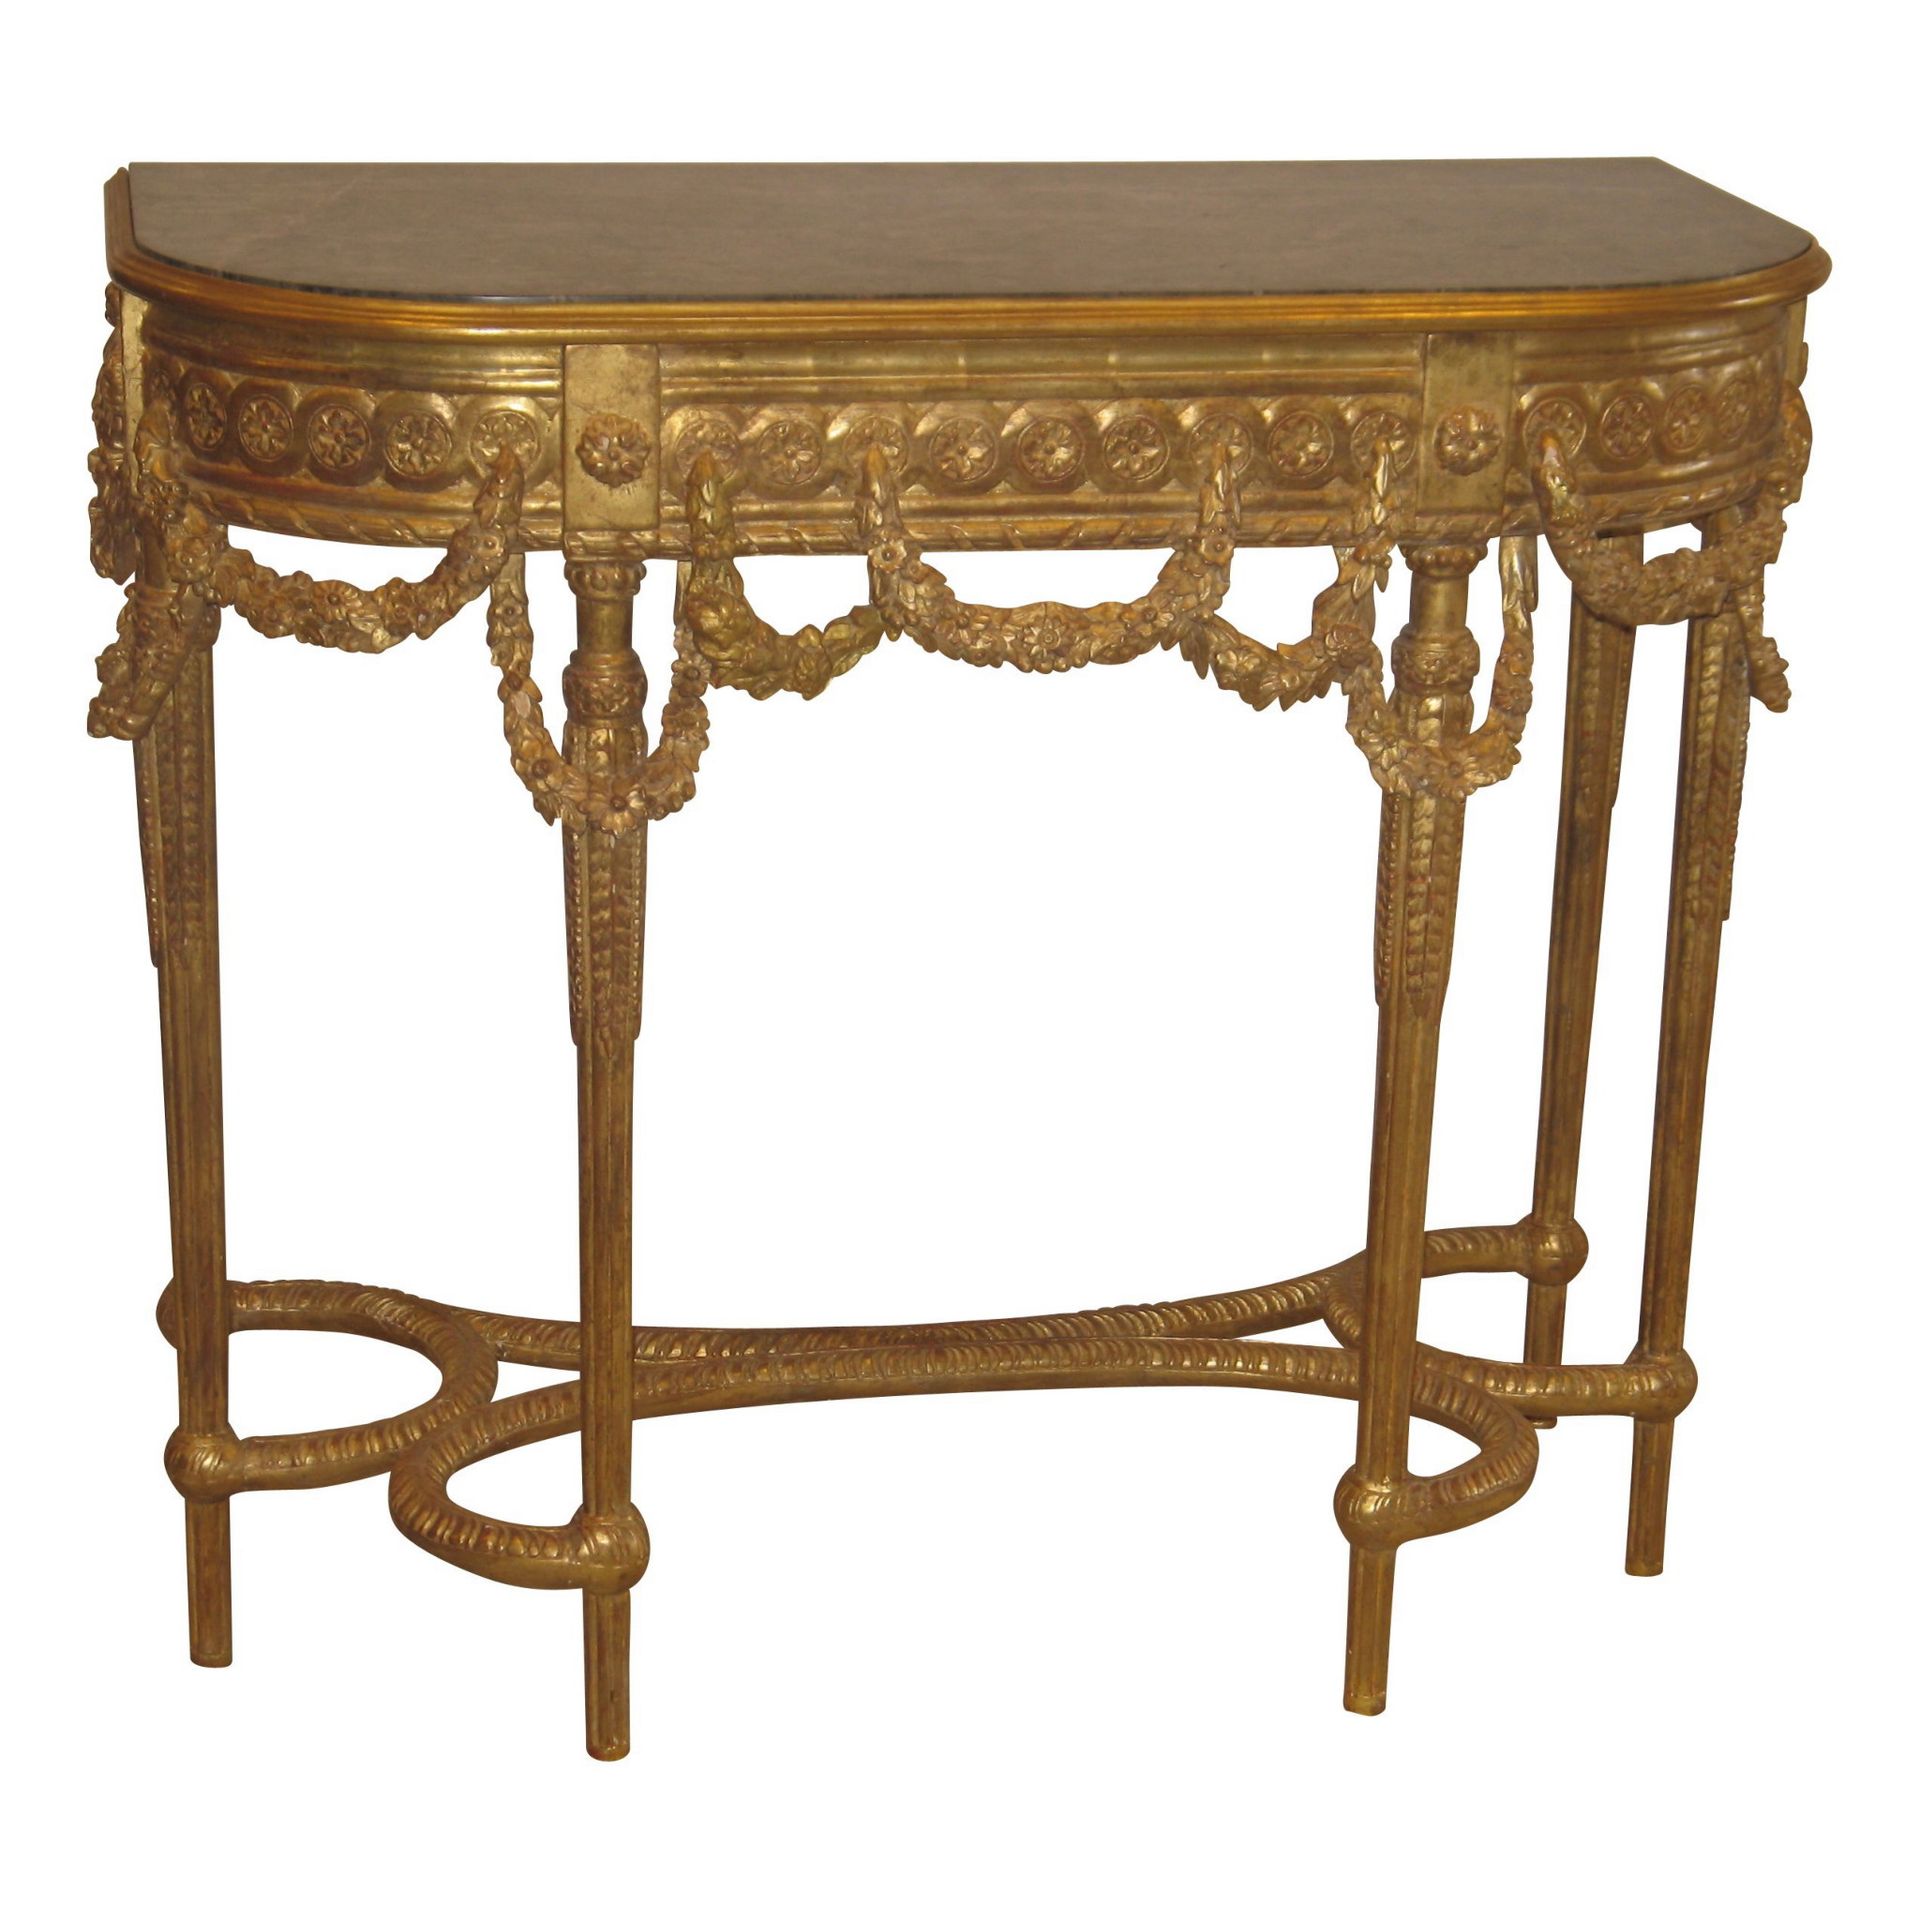 Null 1个路易十六风格的雕刻和镀金的木制控制台，灰色大理石桌面。

尺寸：W101 x H90 x D46厘米



重要信息 :



- 除非在描述中说&hellip;